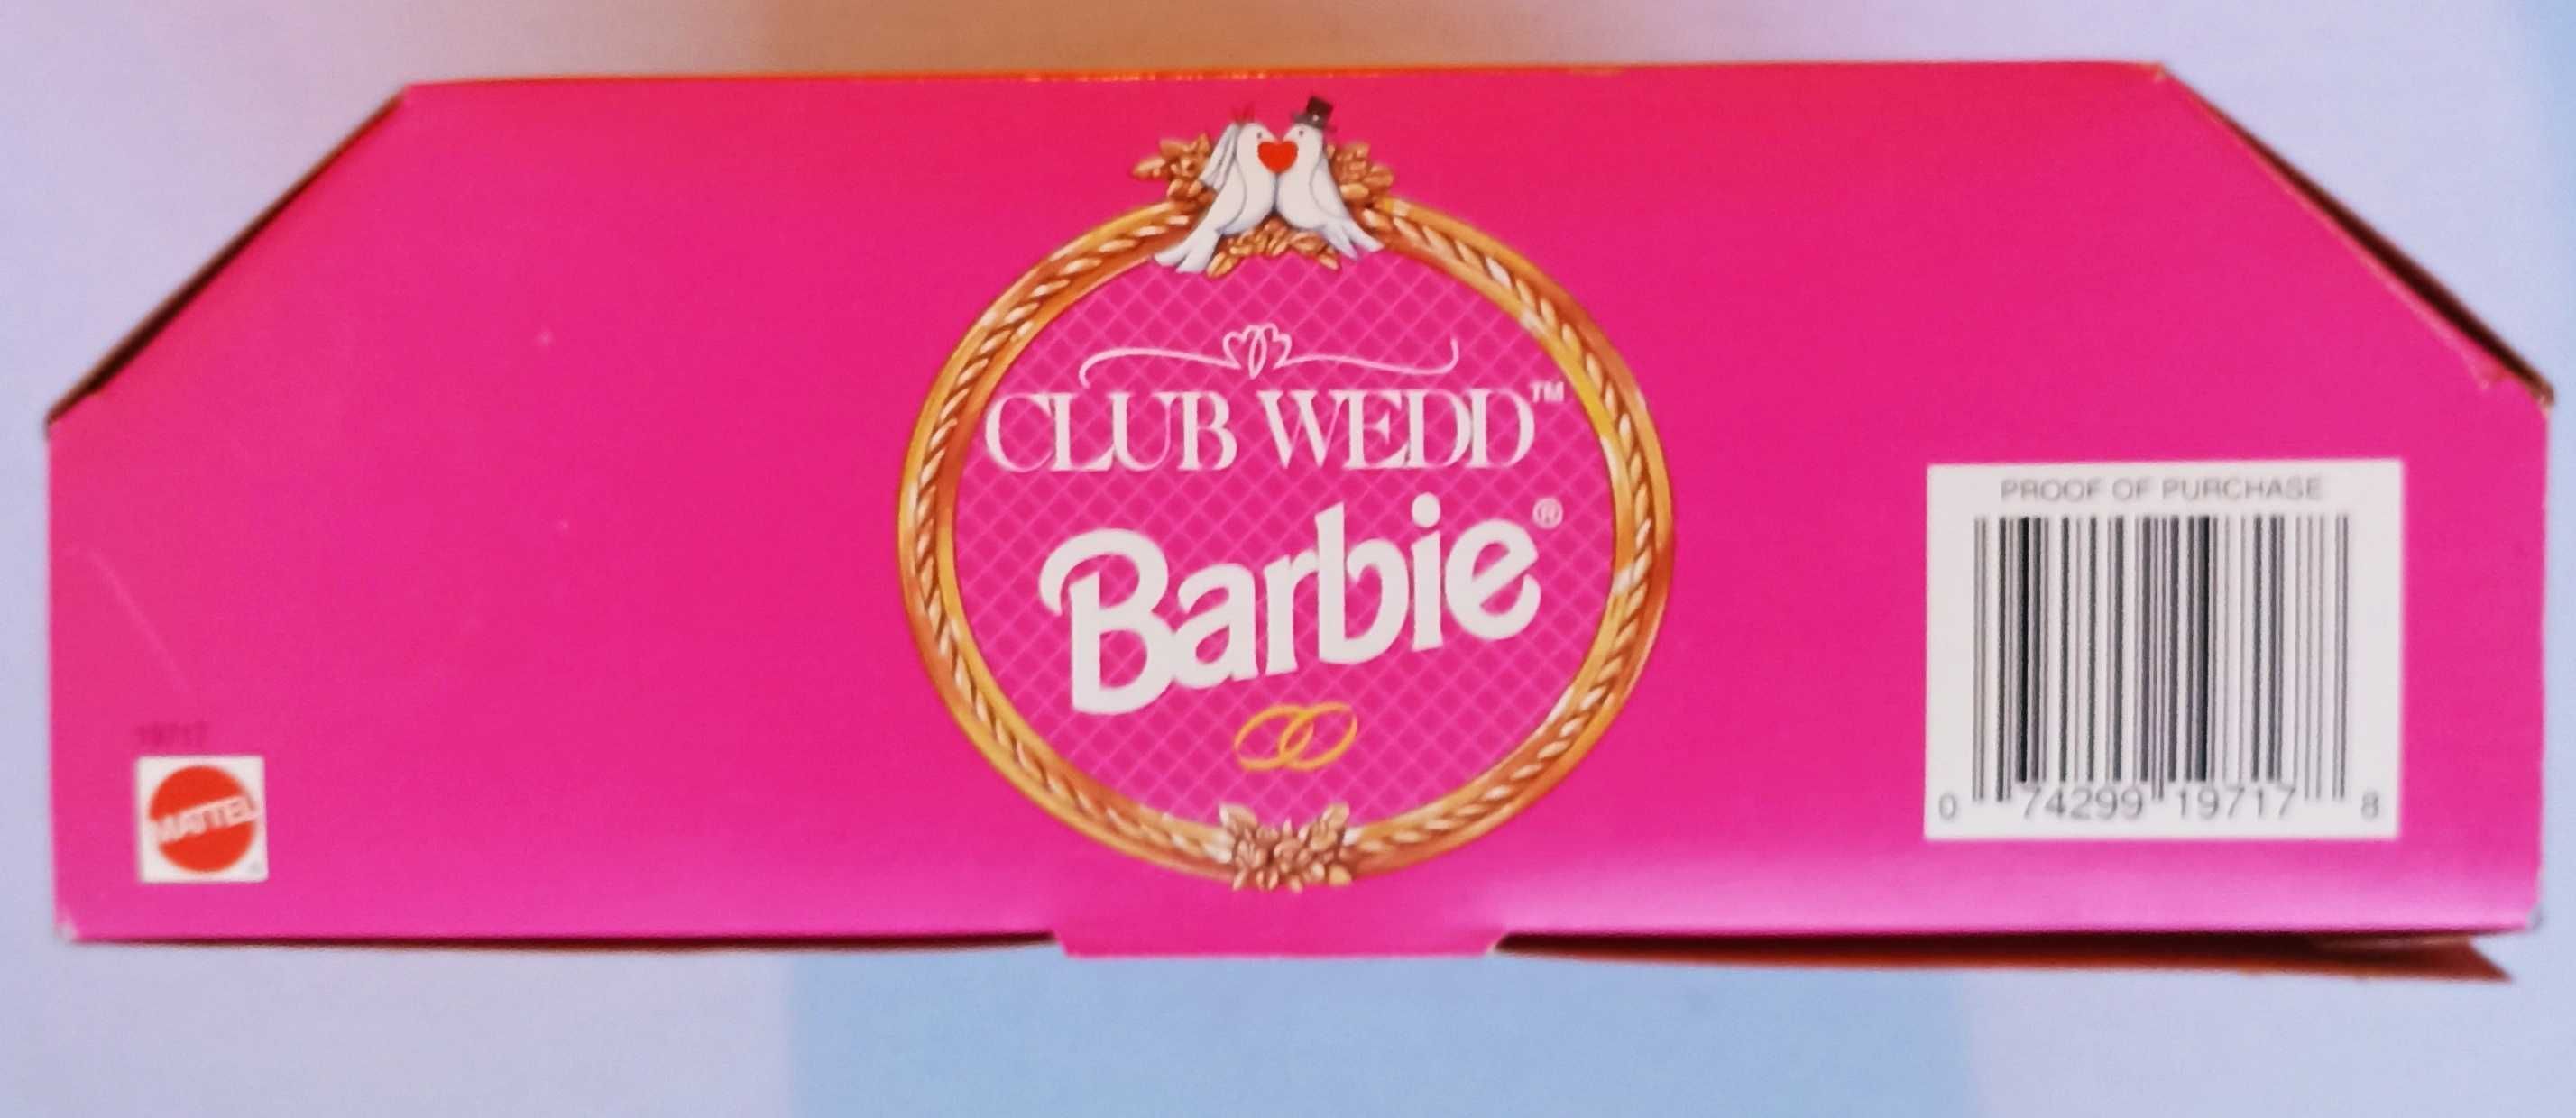 Barbie Club Wedd Blonde, ano 1996